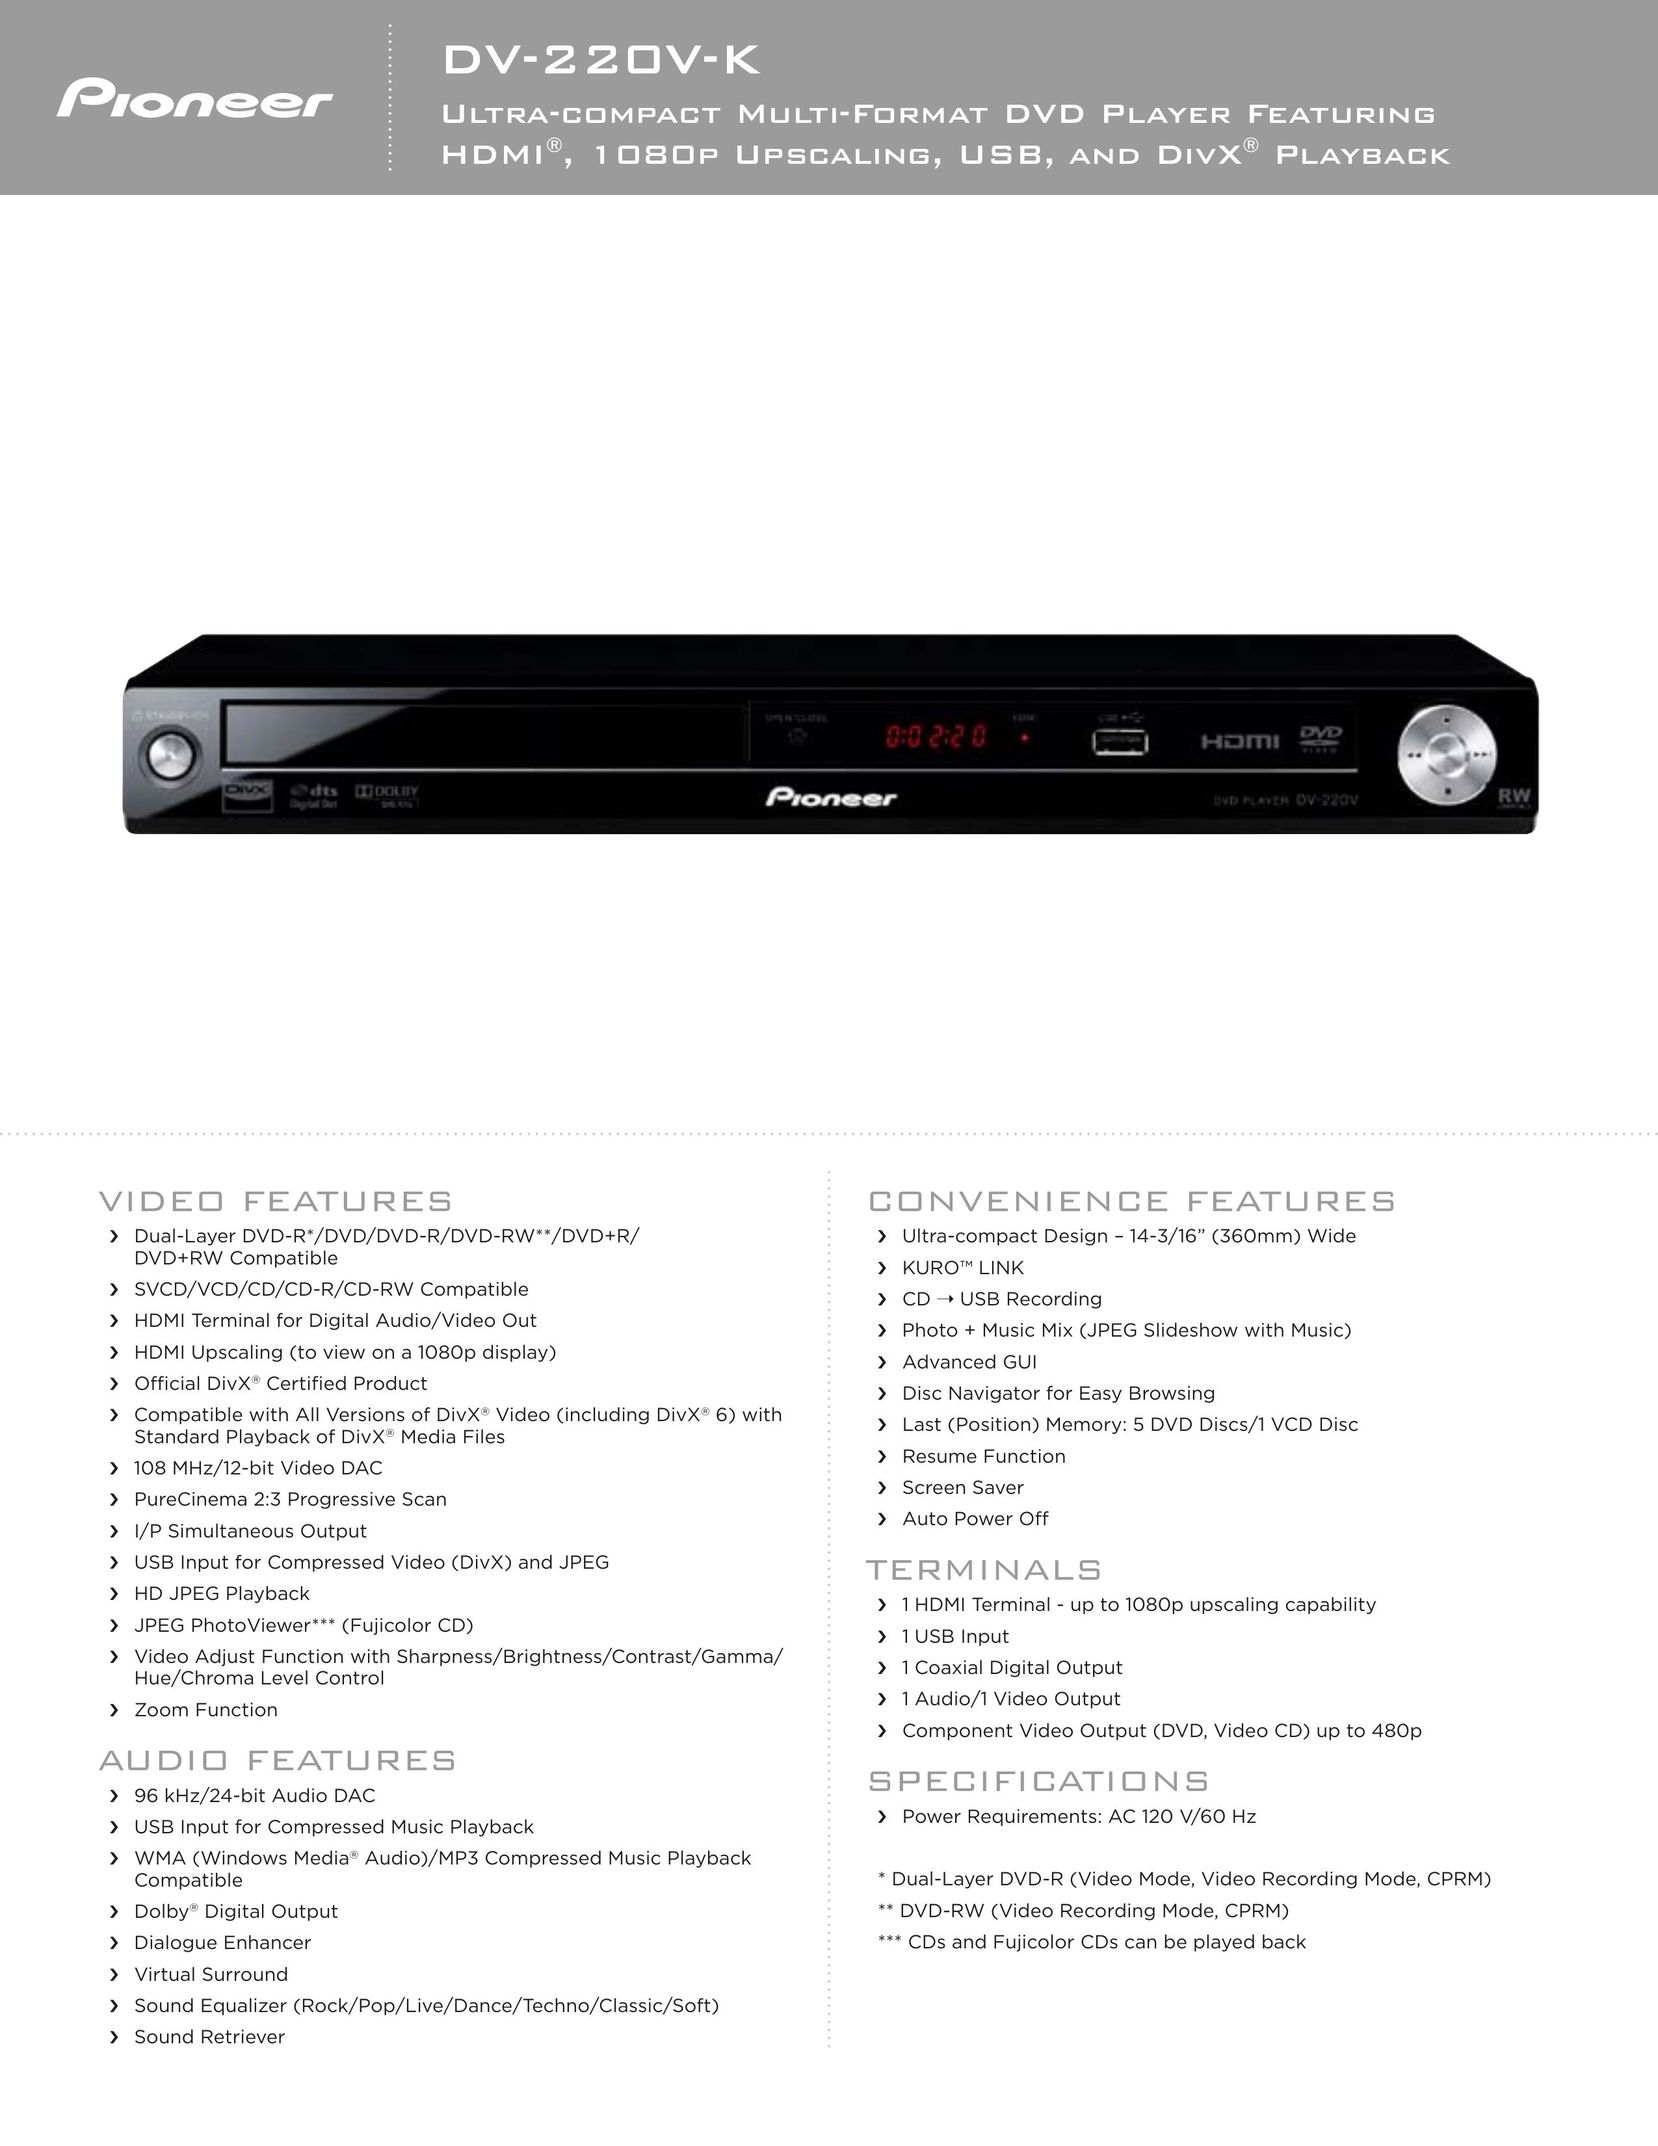 Pioneer DV-220V-K DVD Player User Manual